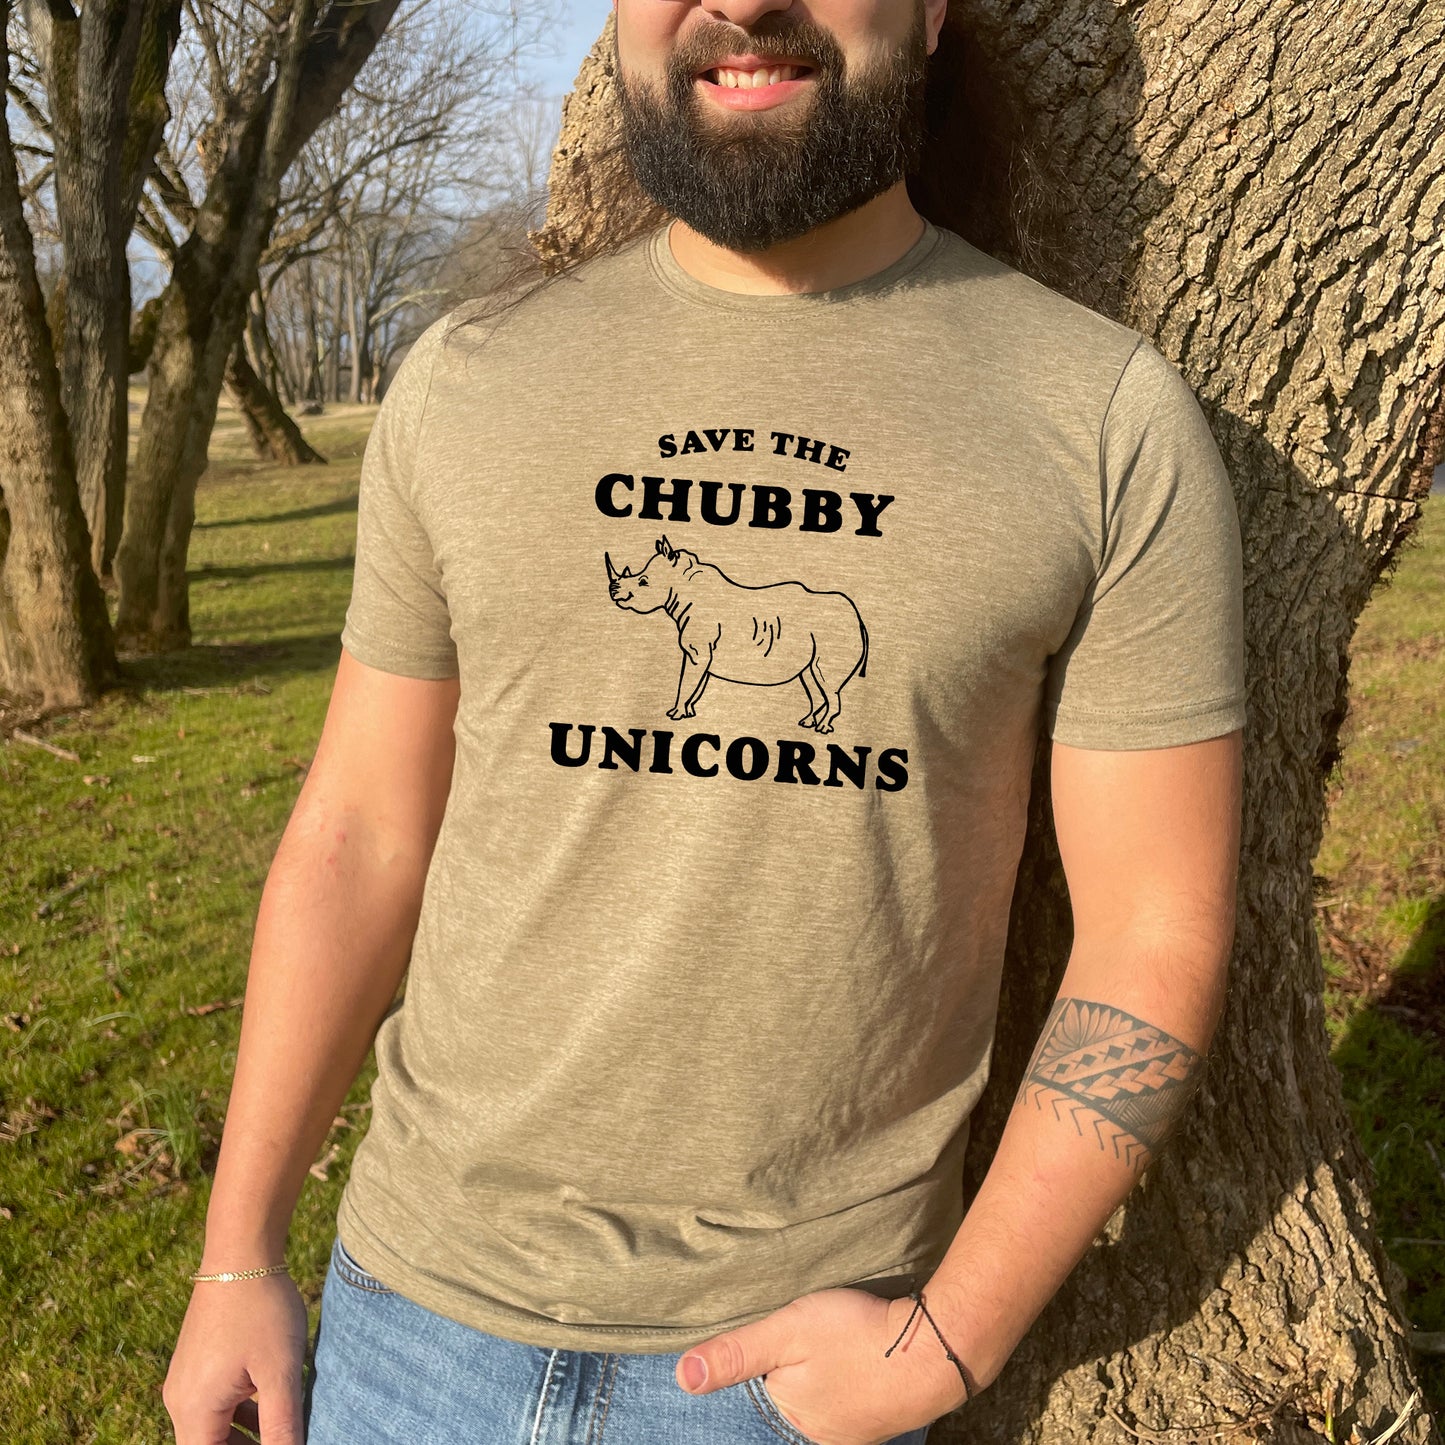 Save The Chubby Unicorns - Men's / Unisex Tee - Stonewash Blue or Sage